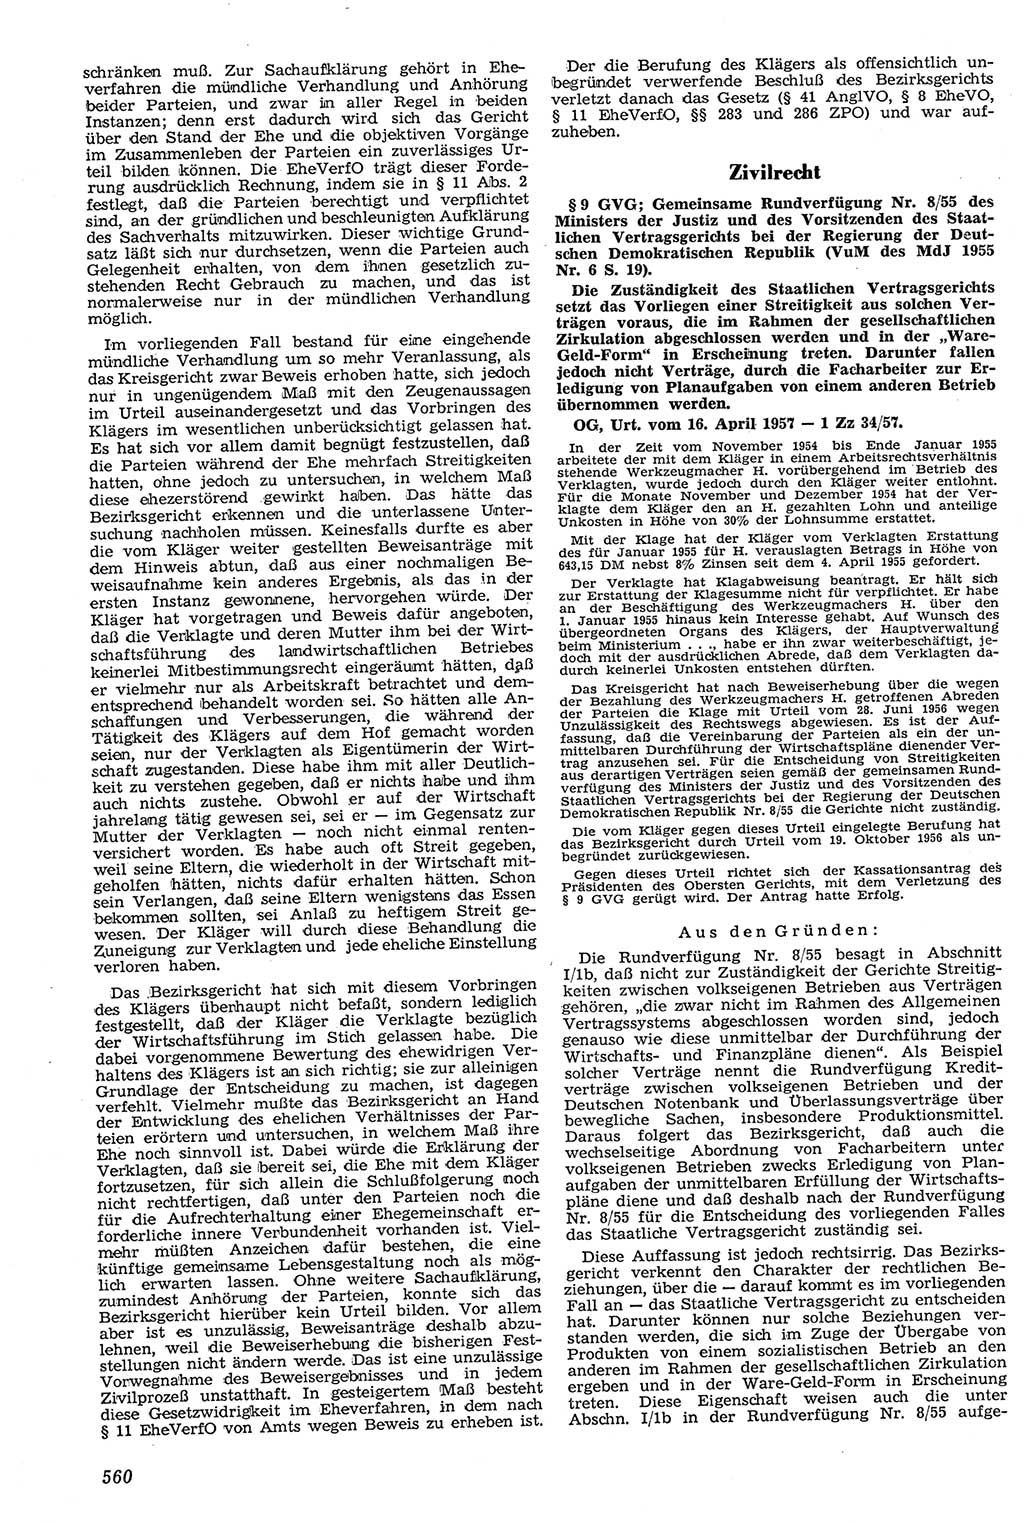 Neue Justiz (NJ), Zeitschrift für Recht und Rechtswissenschaft [Deutsche Demokratische Republik (DDR)], 11. Jahrgang 1957, Seite 560 (NJ DDR 1957, S. 560)